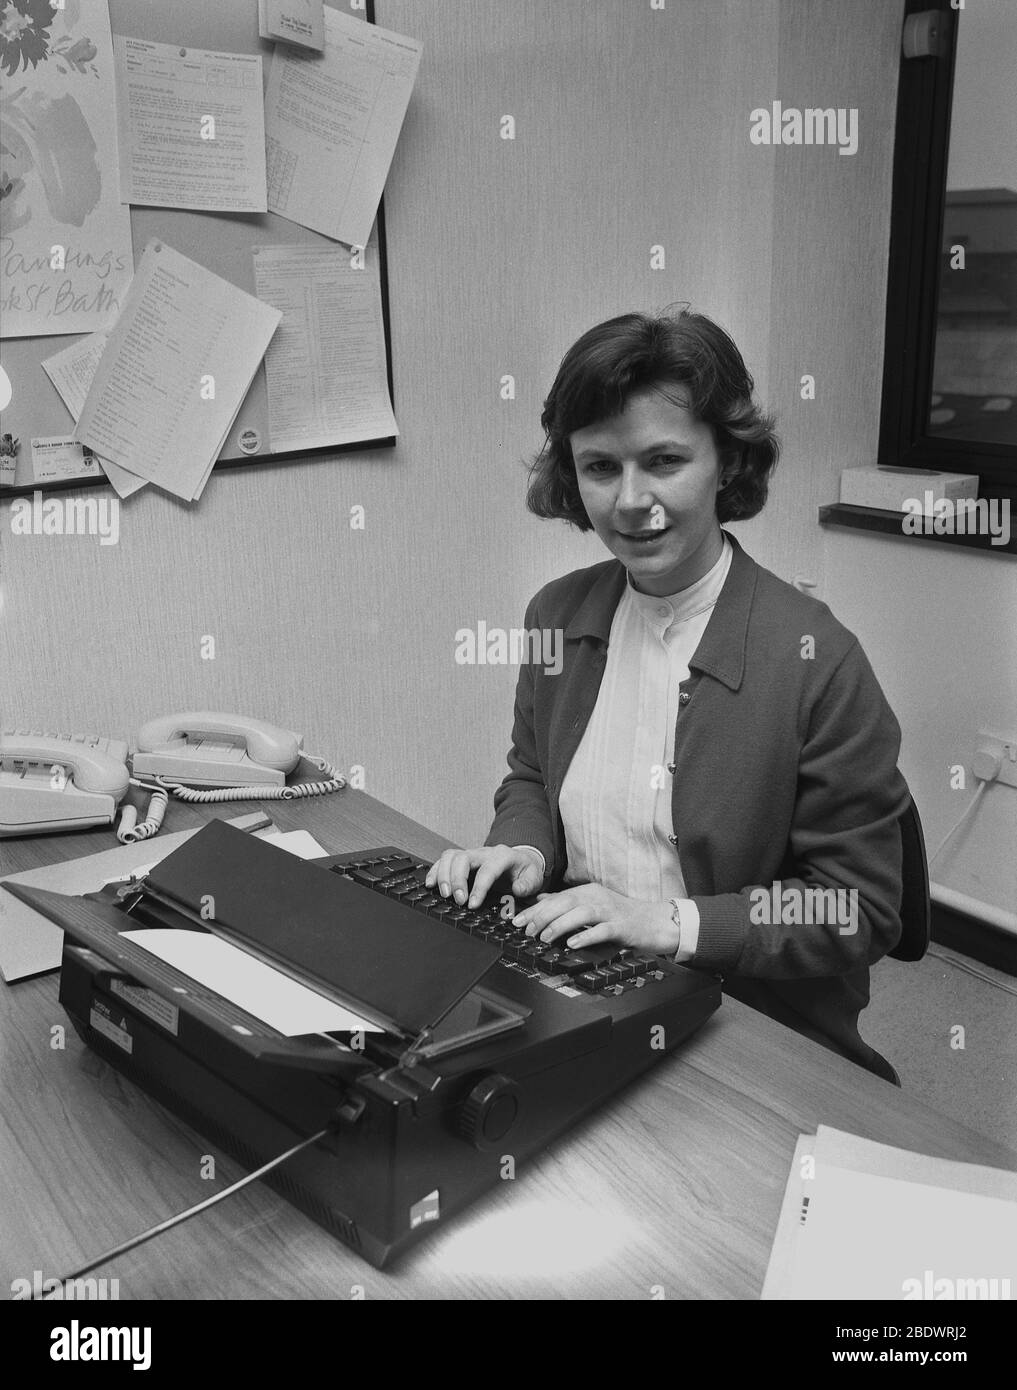 1987, eine Sekretärin an ihrem Schreibtisch mit einer modernen Schreibmaschine, einer elektronischen Schreibmaschine von 'Bruder' einer japanischen Firma. Brother Industries Wurzeln waren in der Nähmaschinenherstellung, und in den 1960er Jahren traten sie mit ihrer ersten tragbaren Schreibmaschine in den Markt für Bürogeräte ein, nachdem sie die britische Firma, die Jones Nähmaschinenfirma Co, ein Manchester-Geschäft, übernommen hatten. In den 1980er Jahren produzierten sie ihre erste elektronische Schreibmaschine und wurden zu einem von vielen japanischen Unternehmen, die große Produktionsstandorte in Großbritannien bauten. Stockfoto